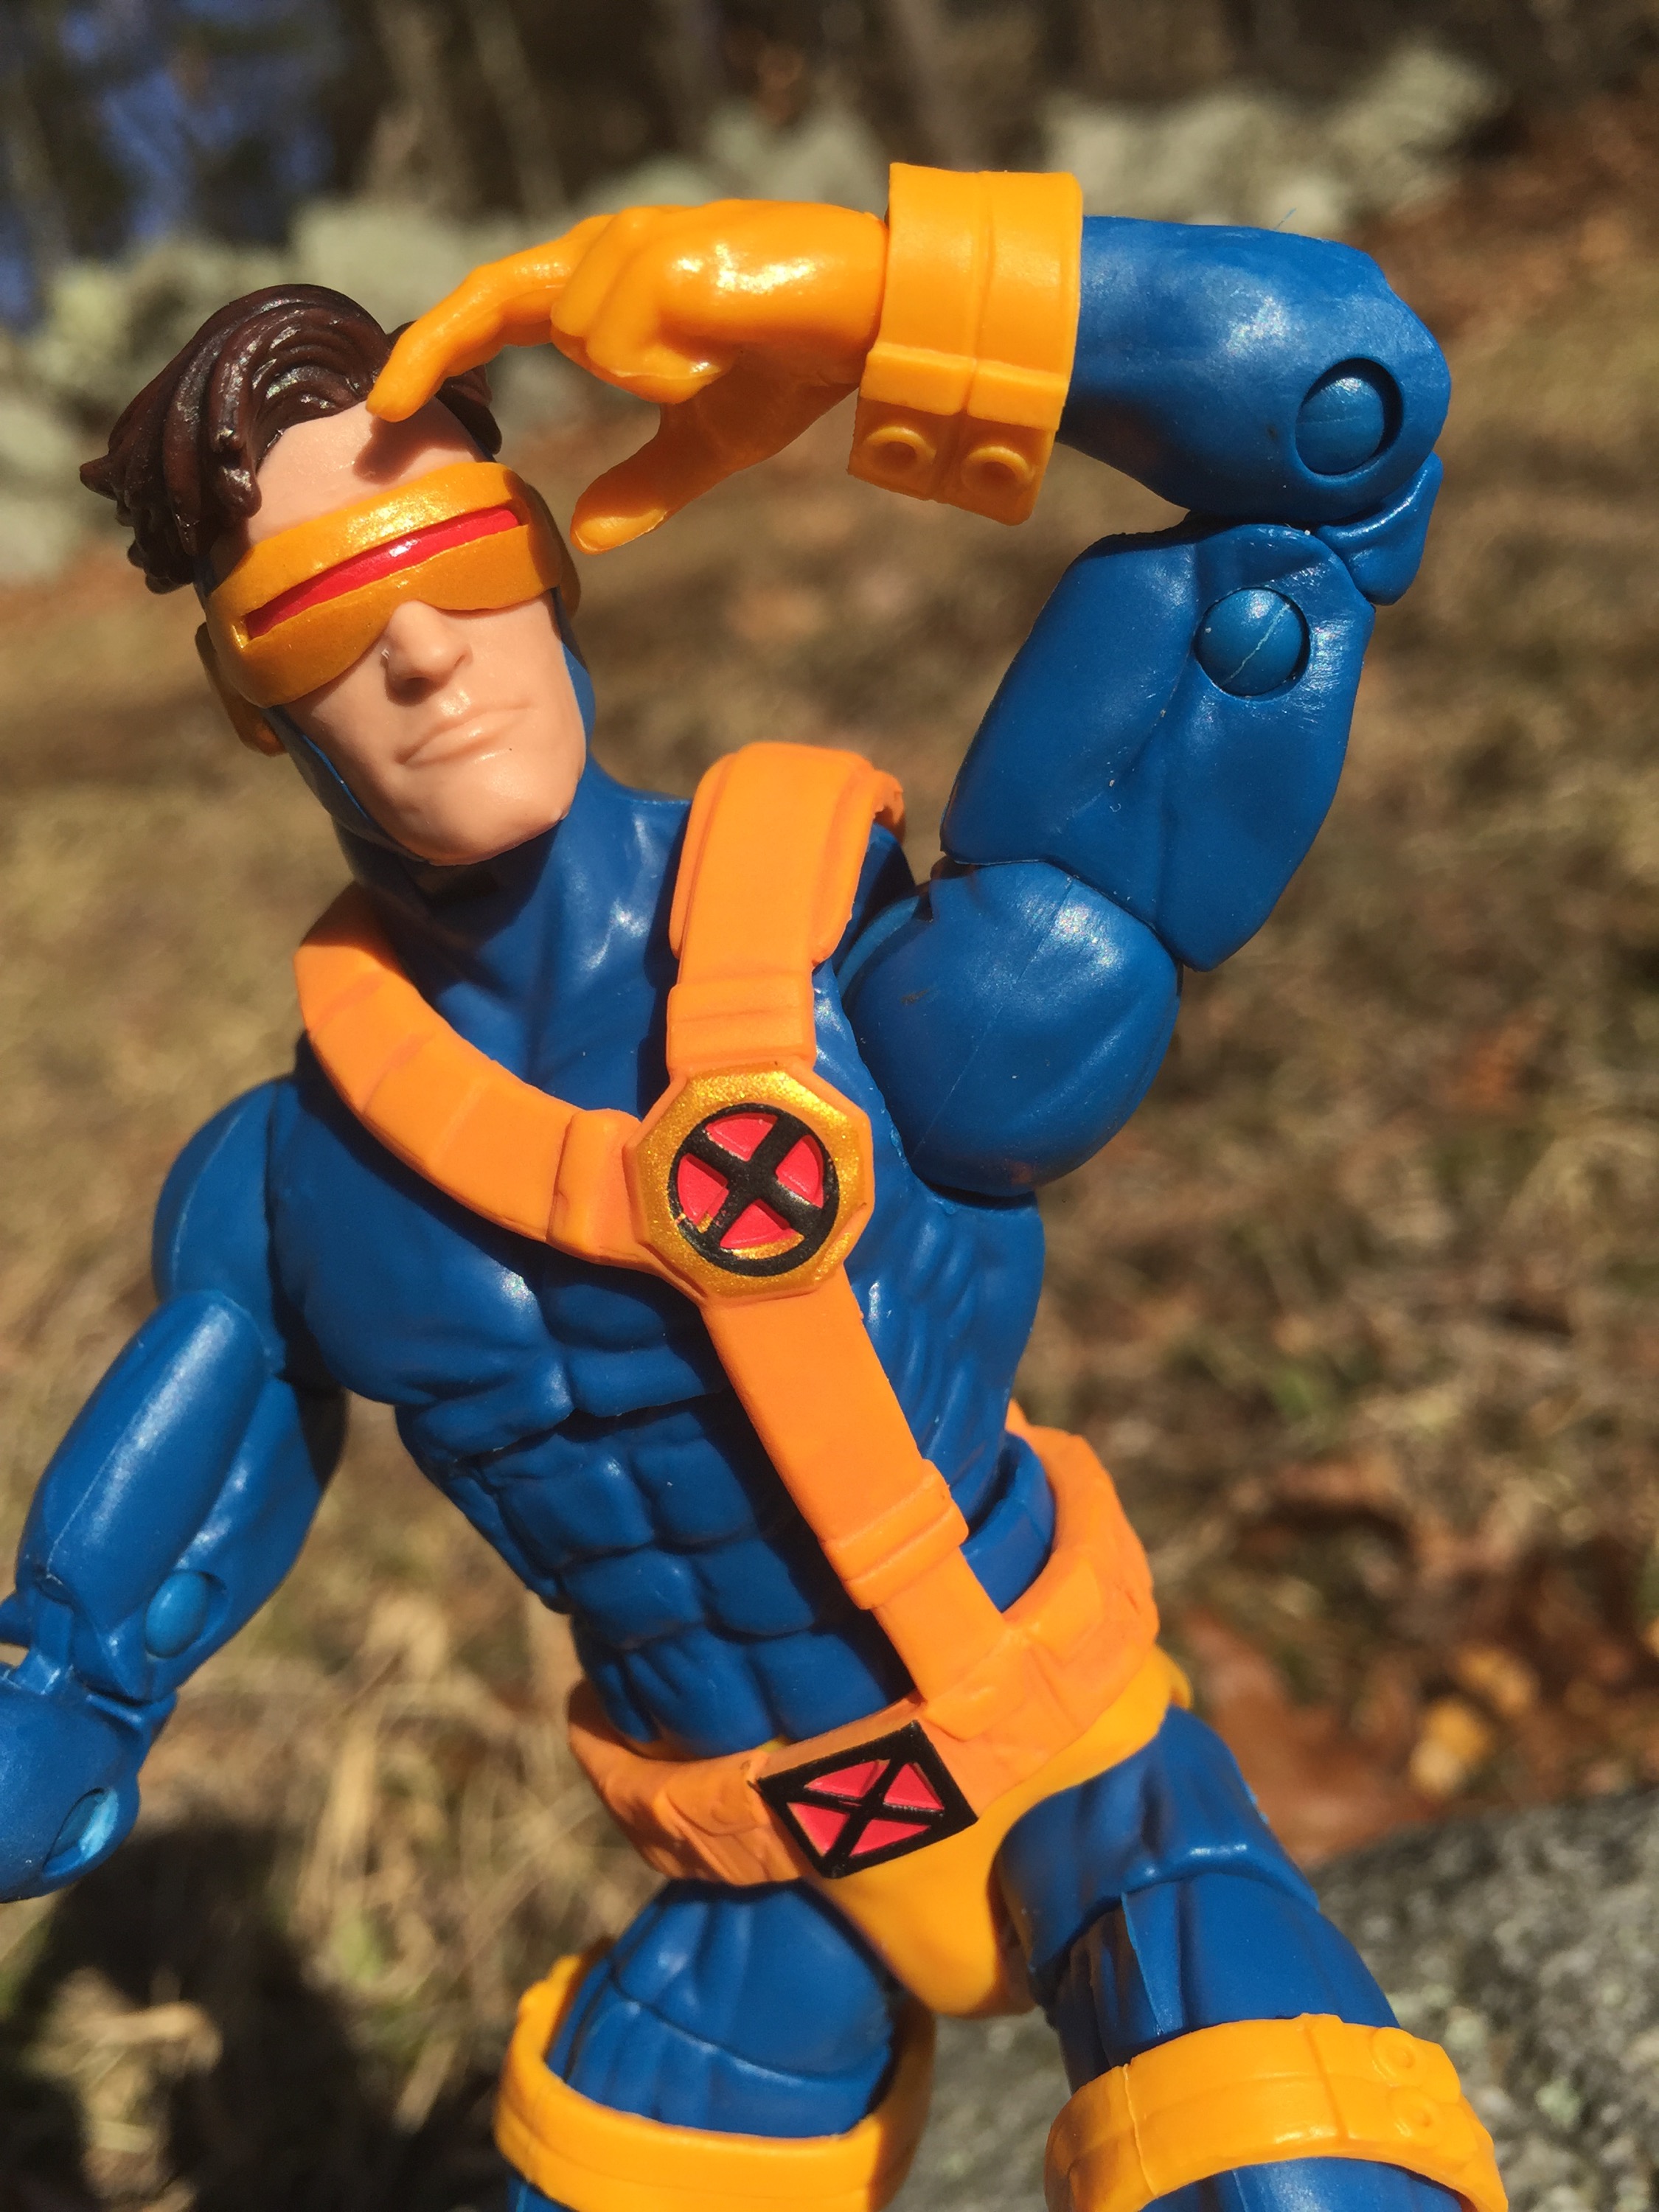 2017 XMen Marvel Legends Cyclops Jim Lee Figure Review